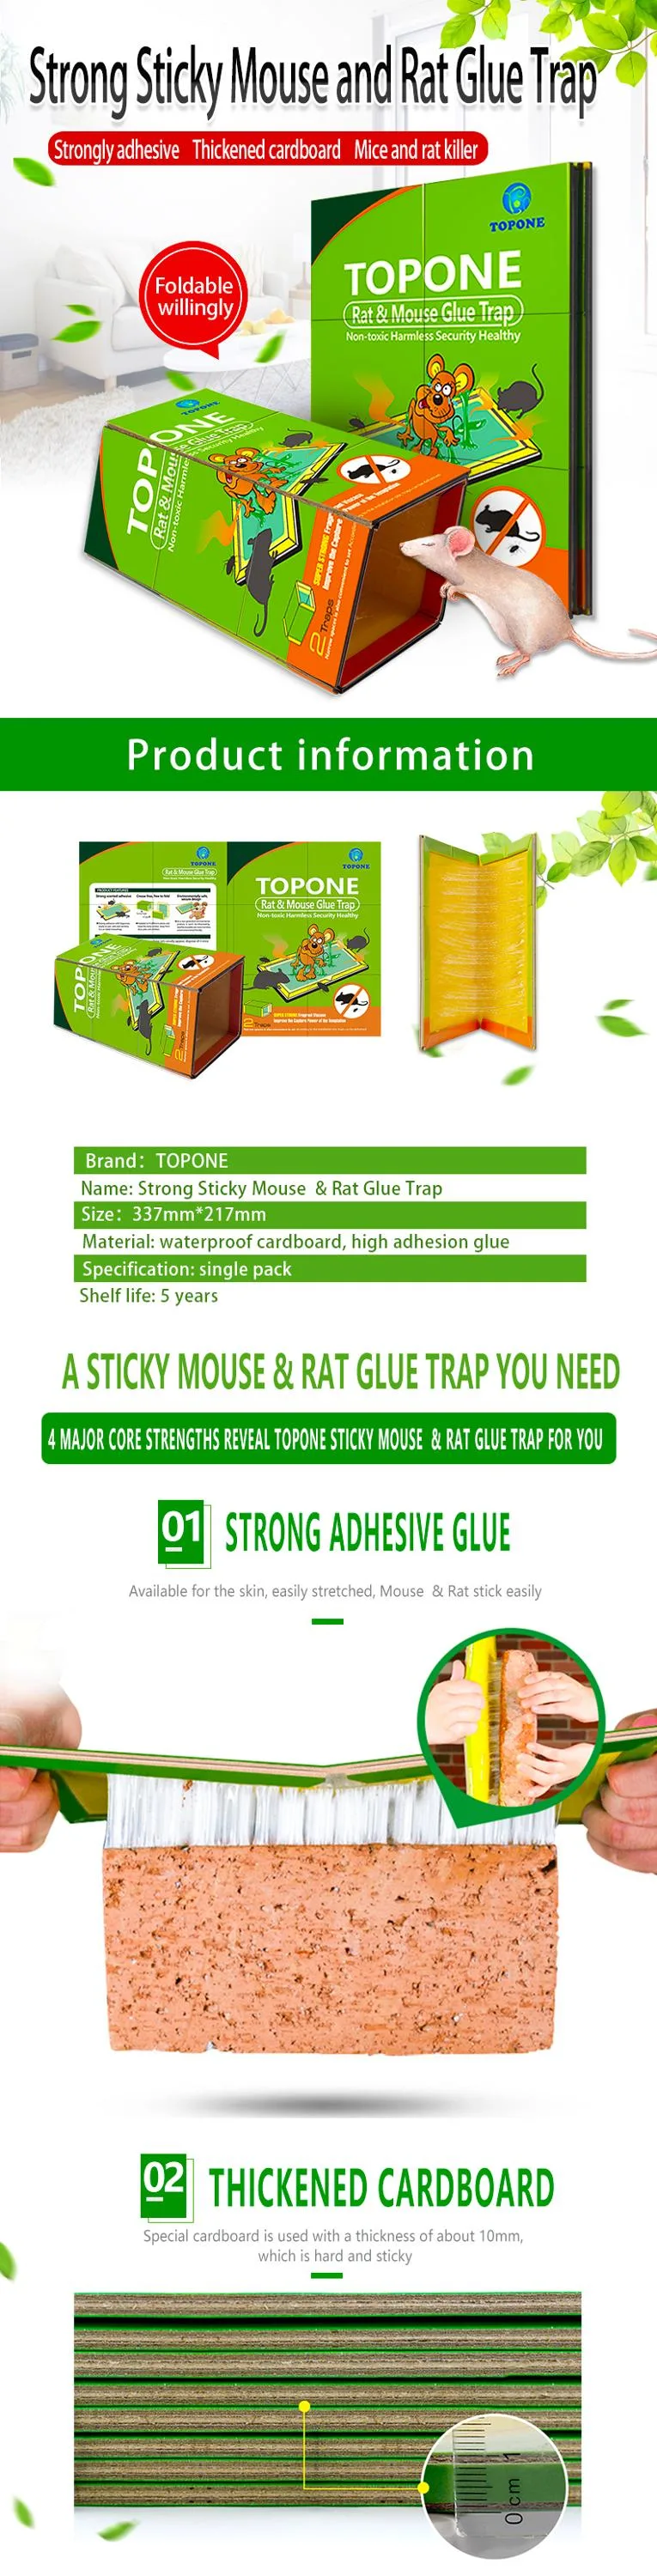 Mouse Rat Sticky Mice Glue Board Trap for Stick Mice